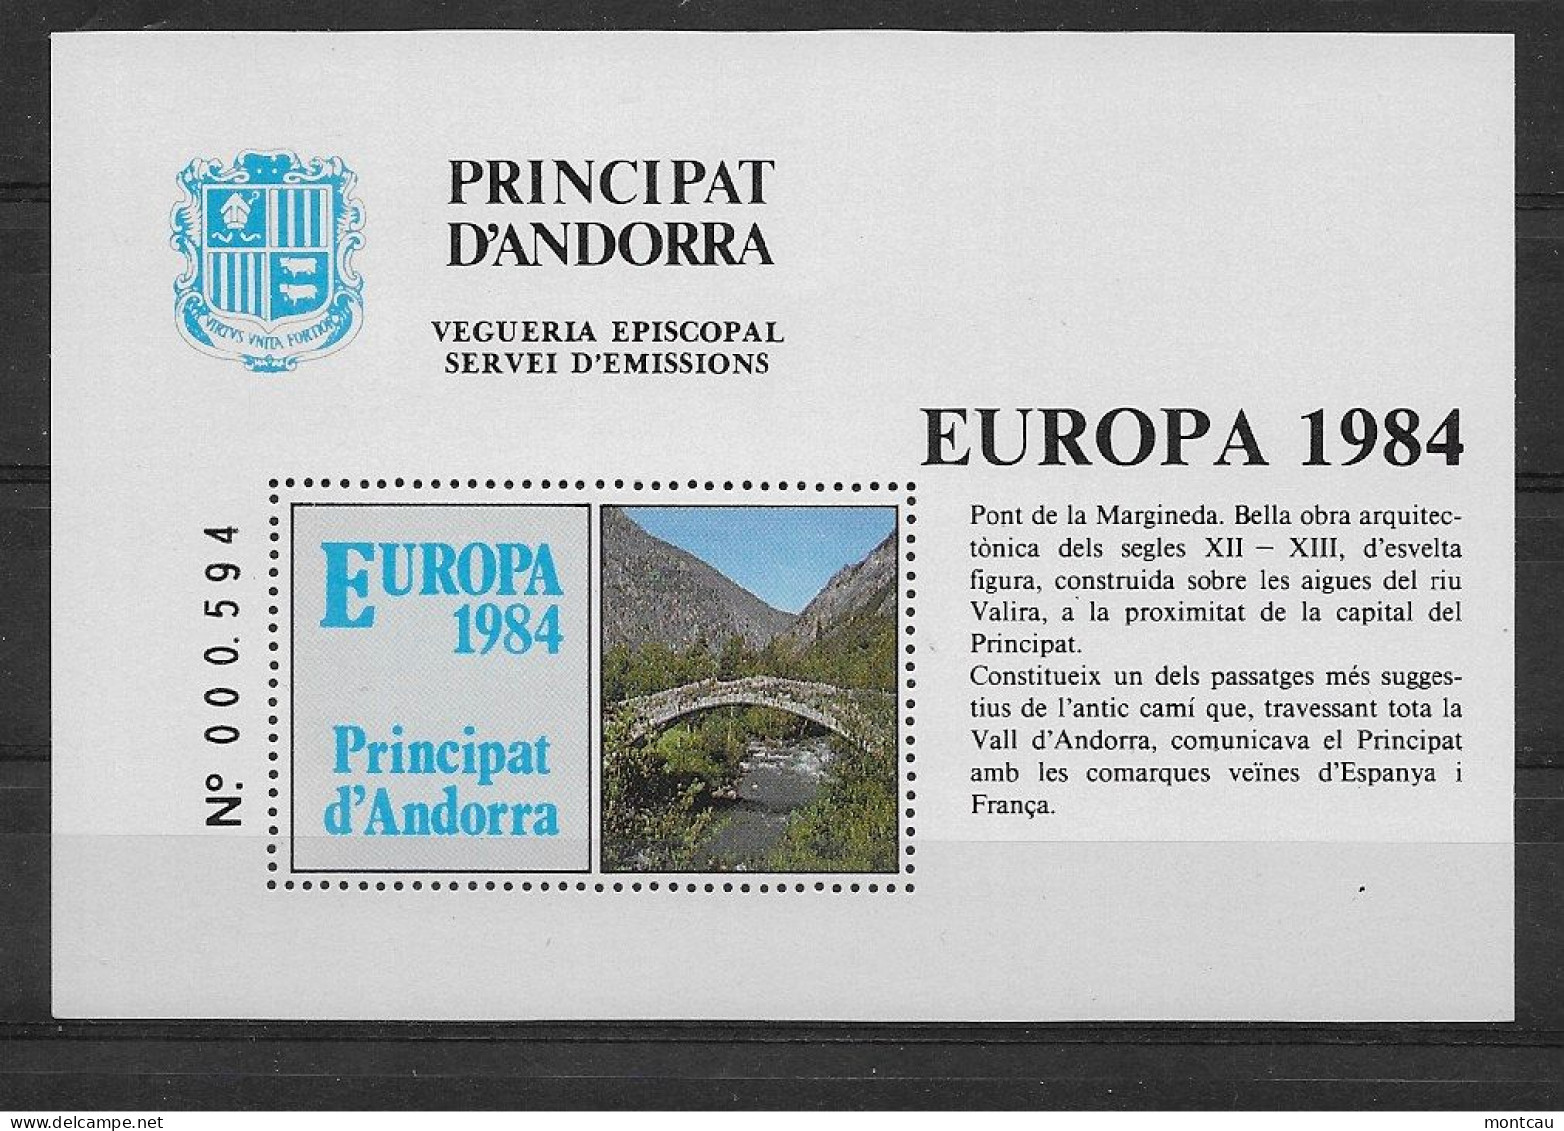 Andorra - 1984 - Vegueria Episcopal Europa - Vicariato Episcopale